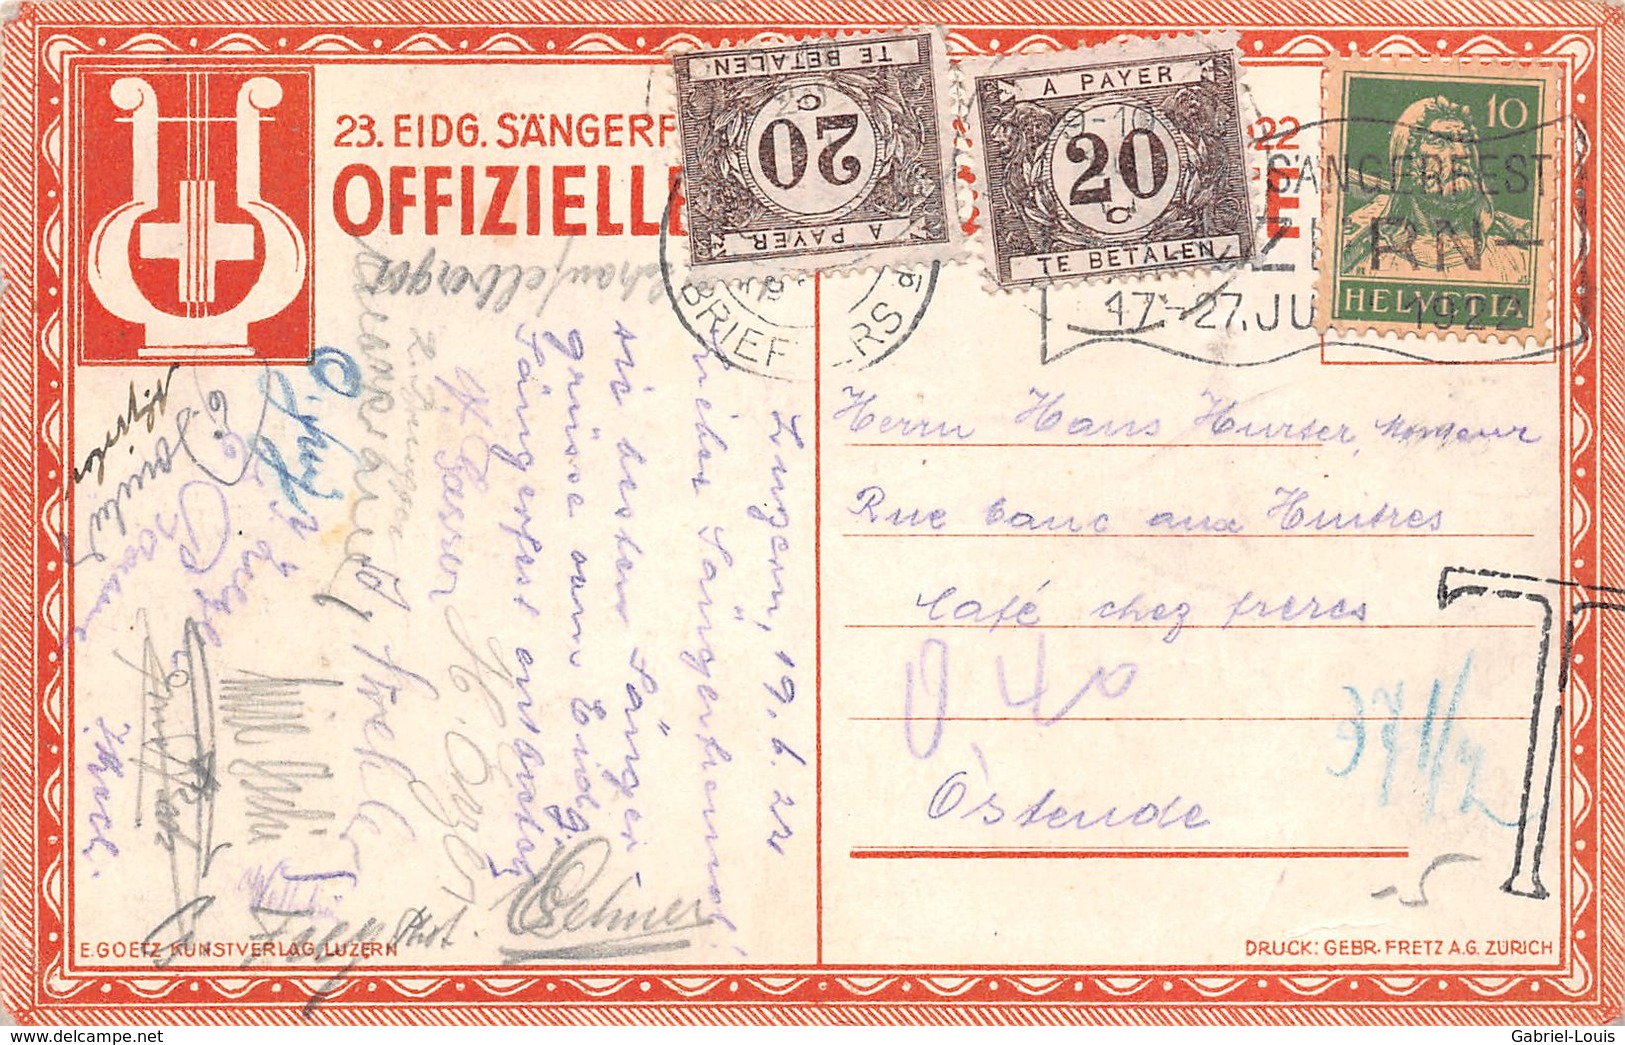 Eidgen Sangerfest Luzern 17-27 Juni 1922 -  Besteuerte Karte Für Unzureichendes Porto In Belgien - Lucerne